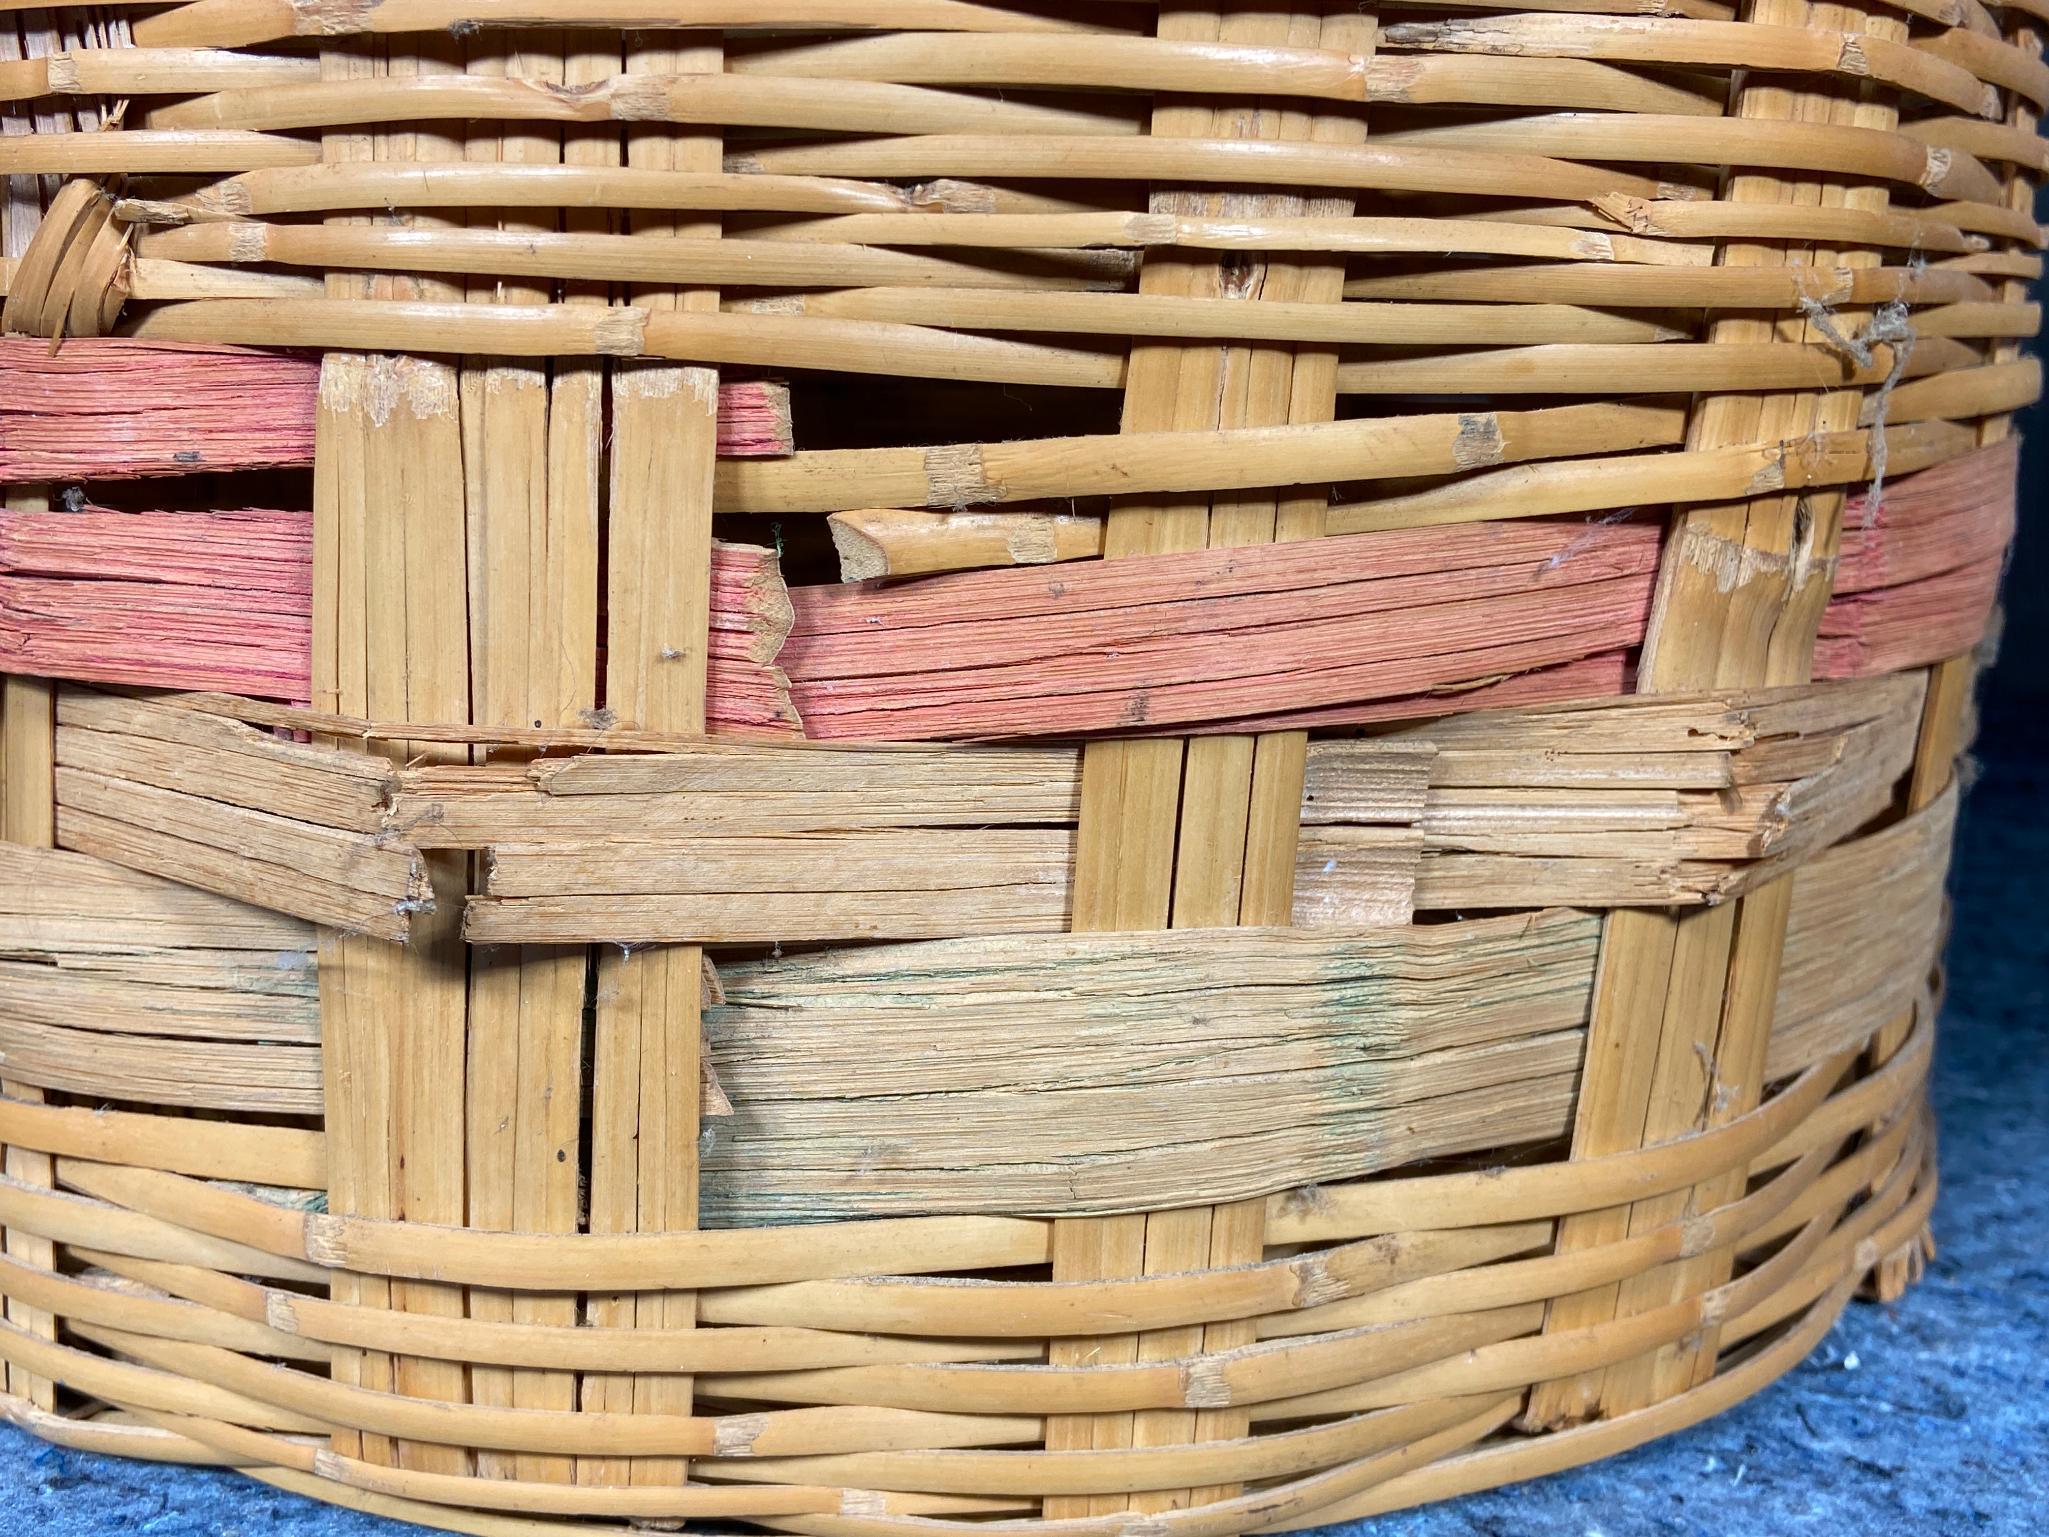 9 Vintage Wicker Baskets